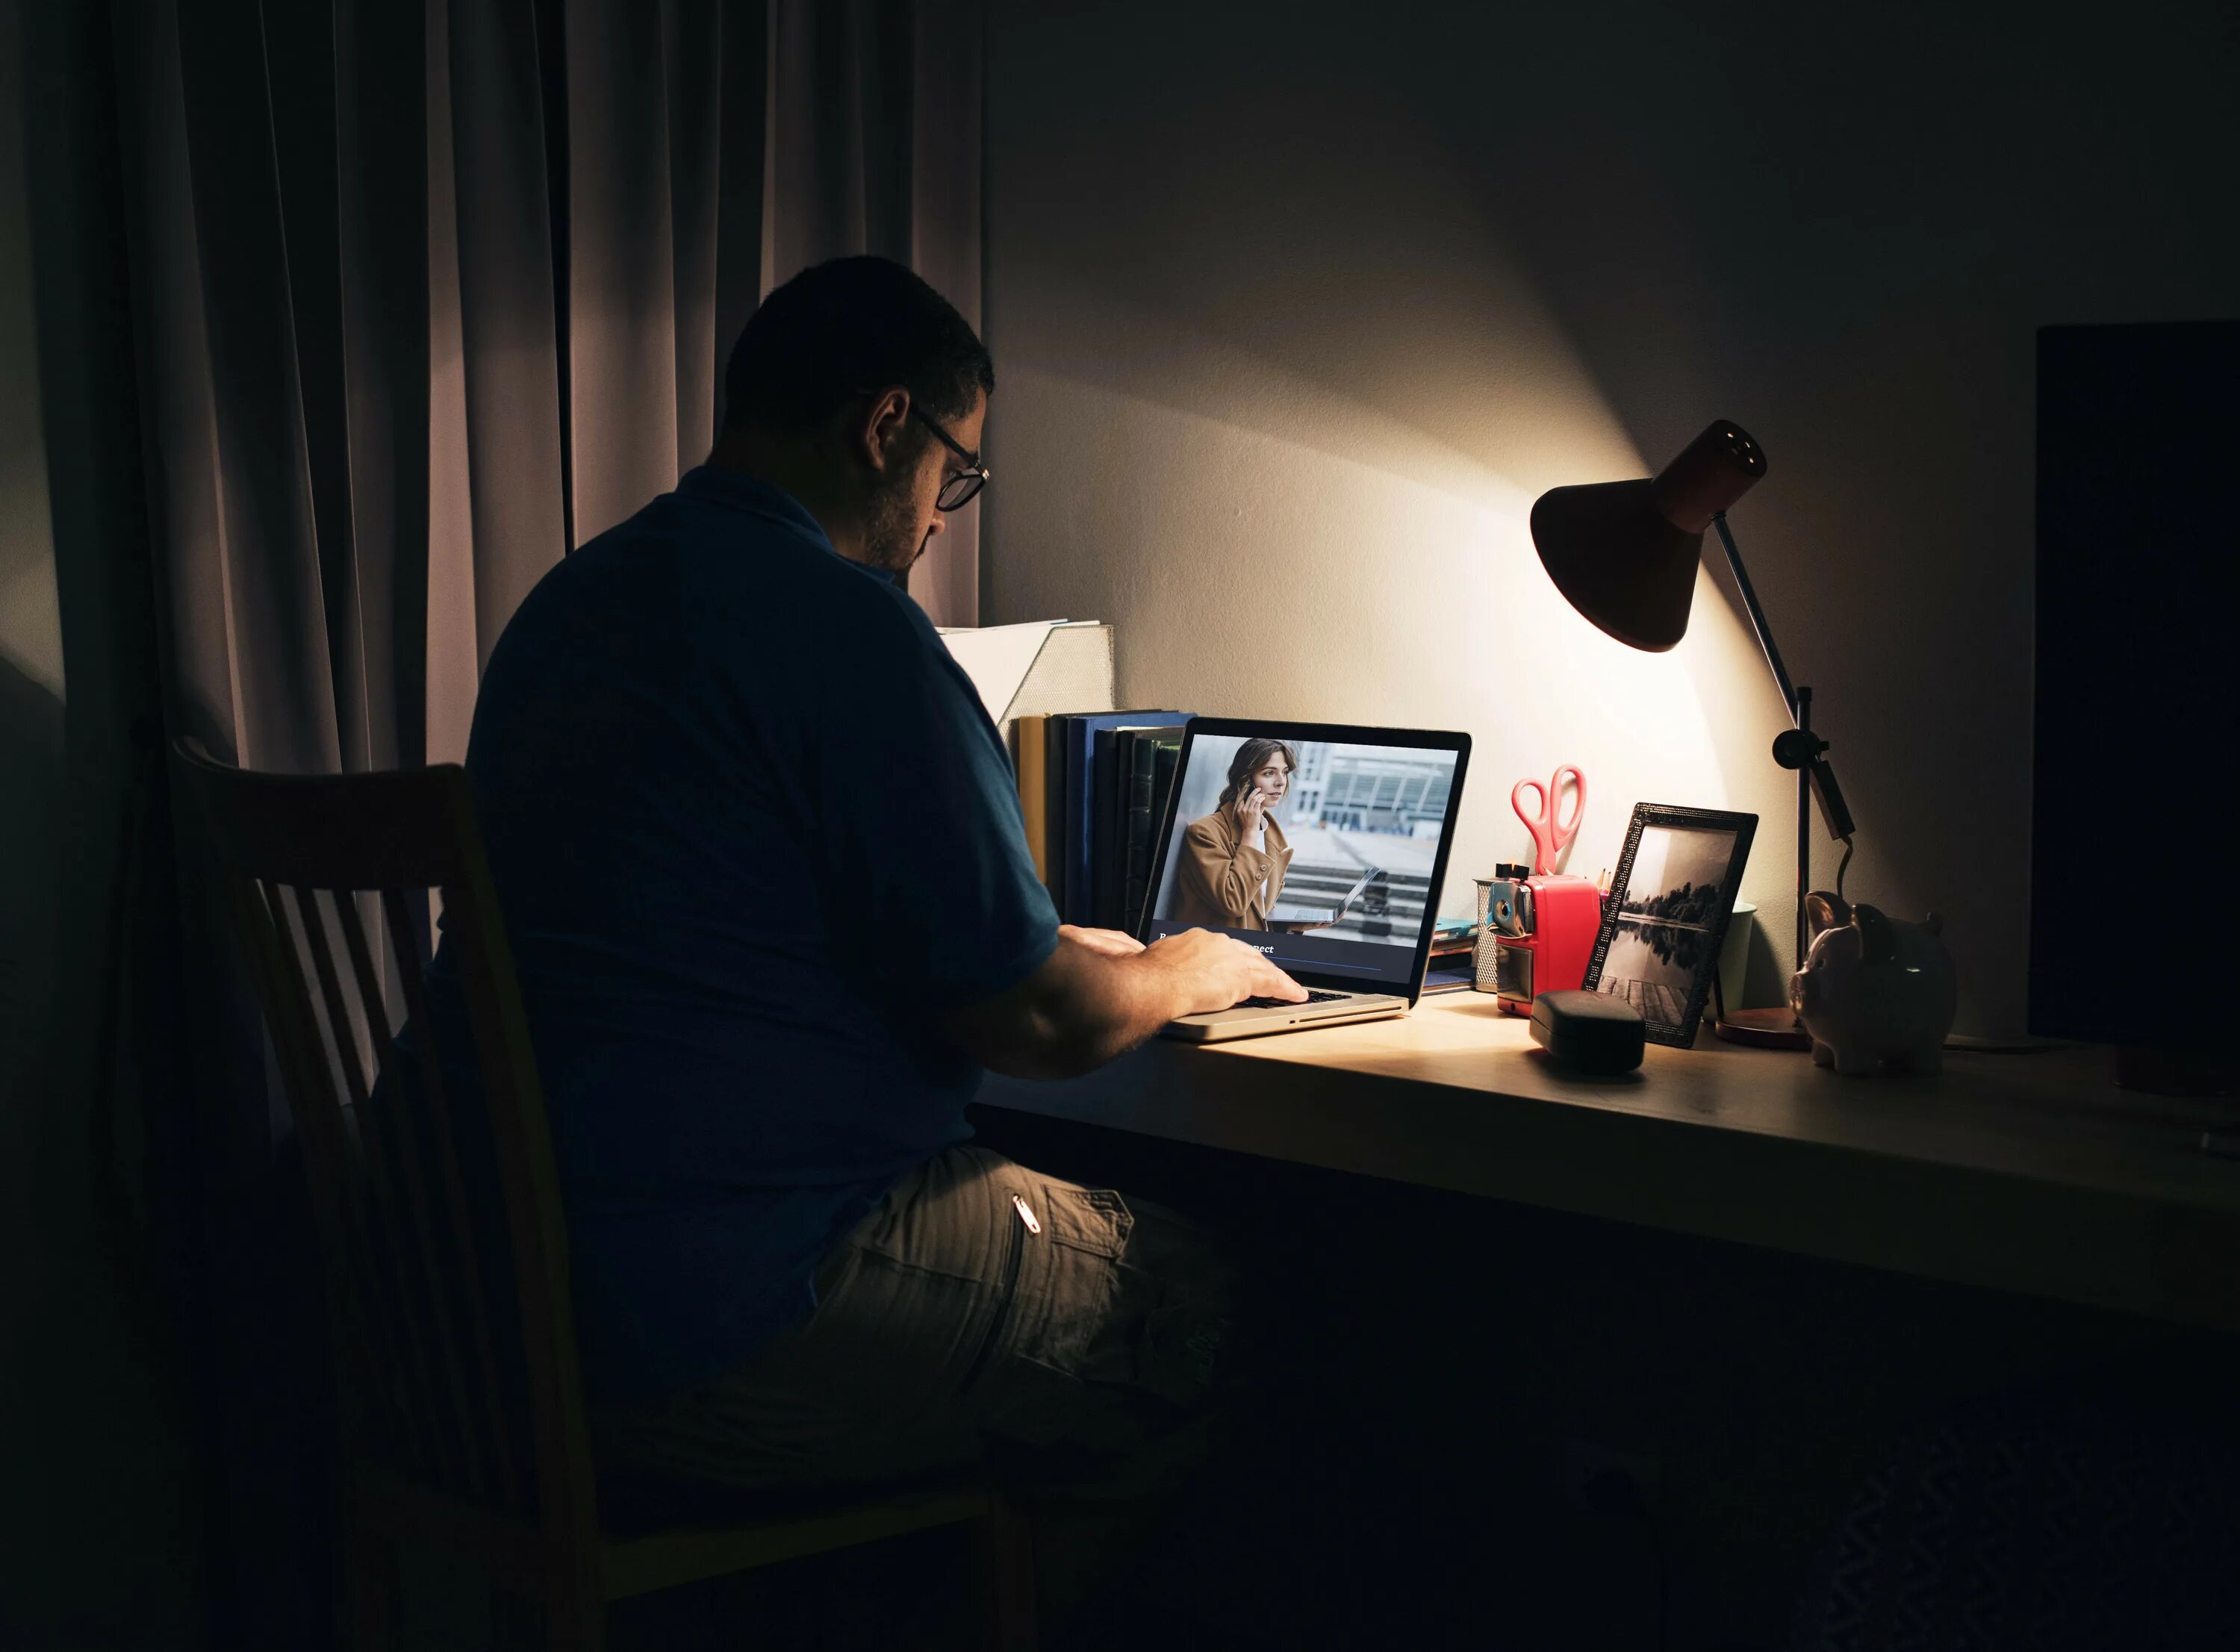 Парень за компьютером со спины. Человек ноутбук лампа. Работа ночью. Фото мужчины за компом. Ночные подработки в москве для мужчин